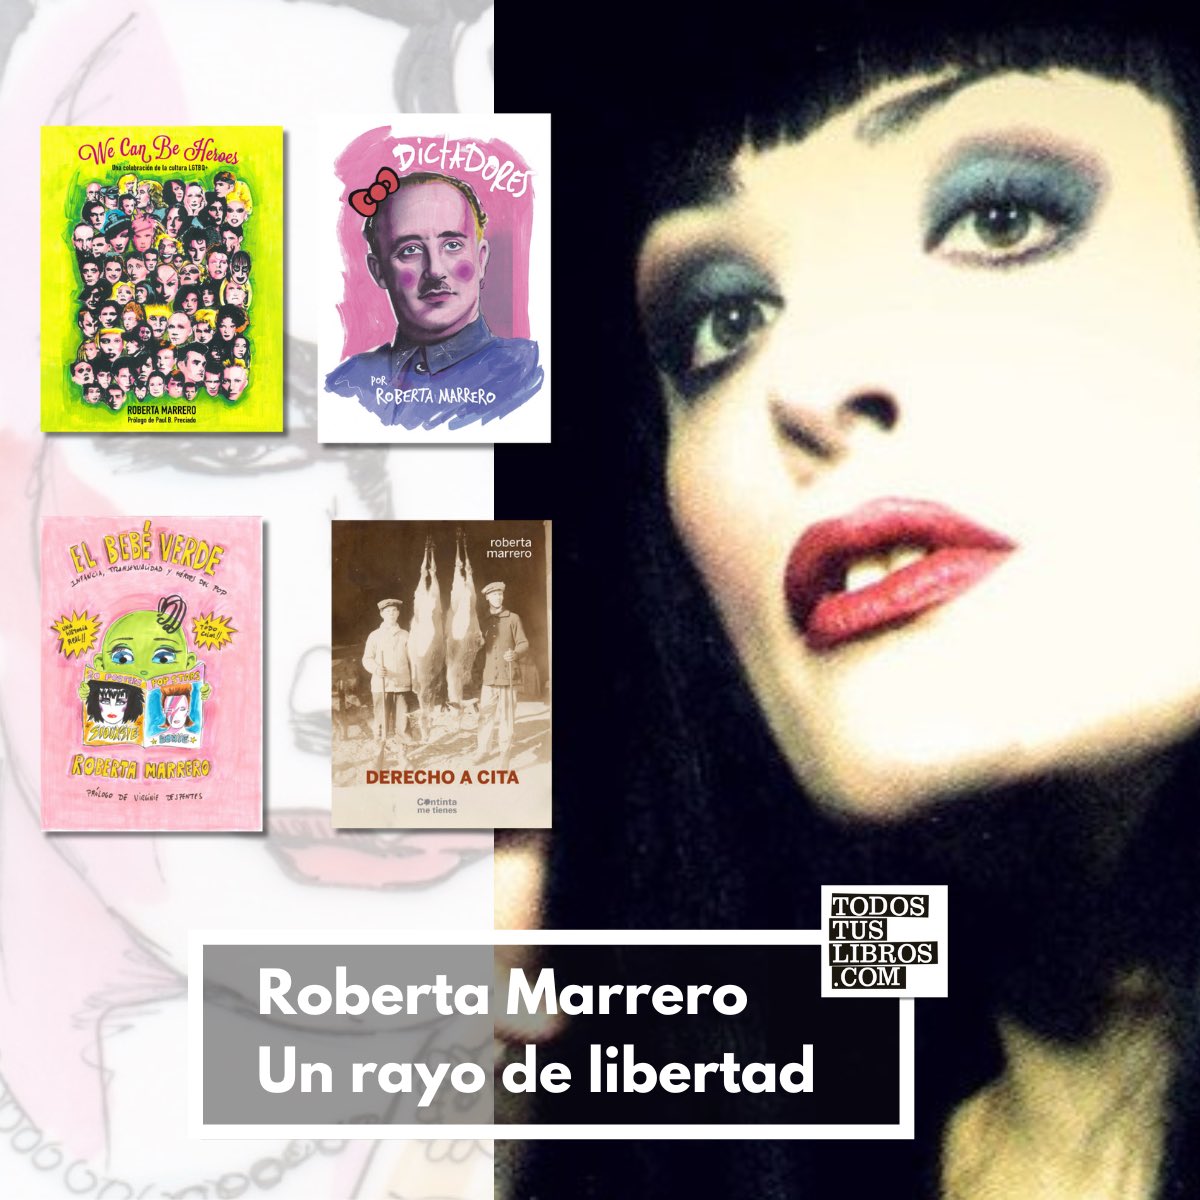 Dedicamos un espacio a la artista y escritora #RobertaMarrero. Descubre su obra en librerías 👉🏼 cutt.ly/8etEBgBk. #todostuslibros